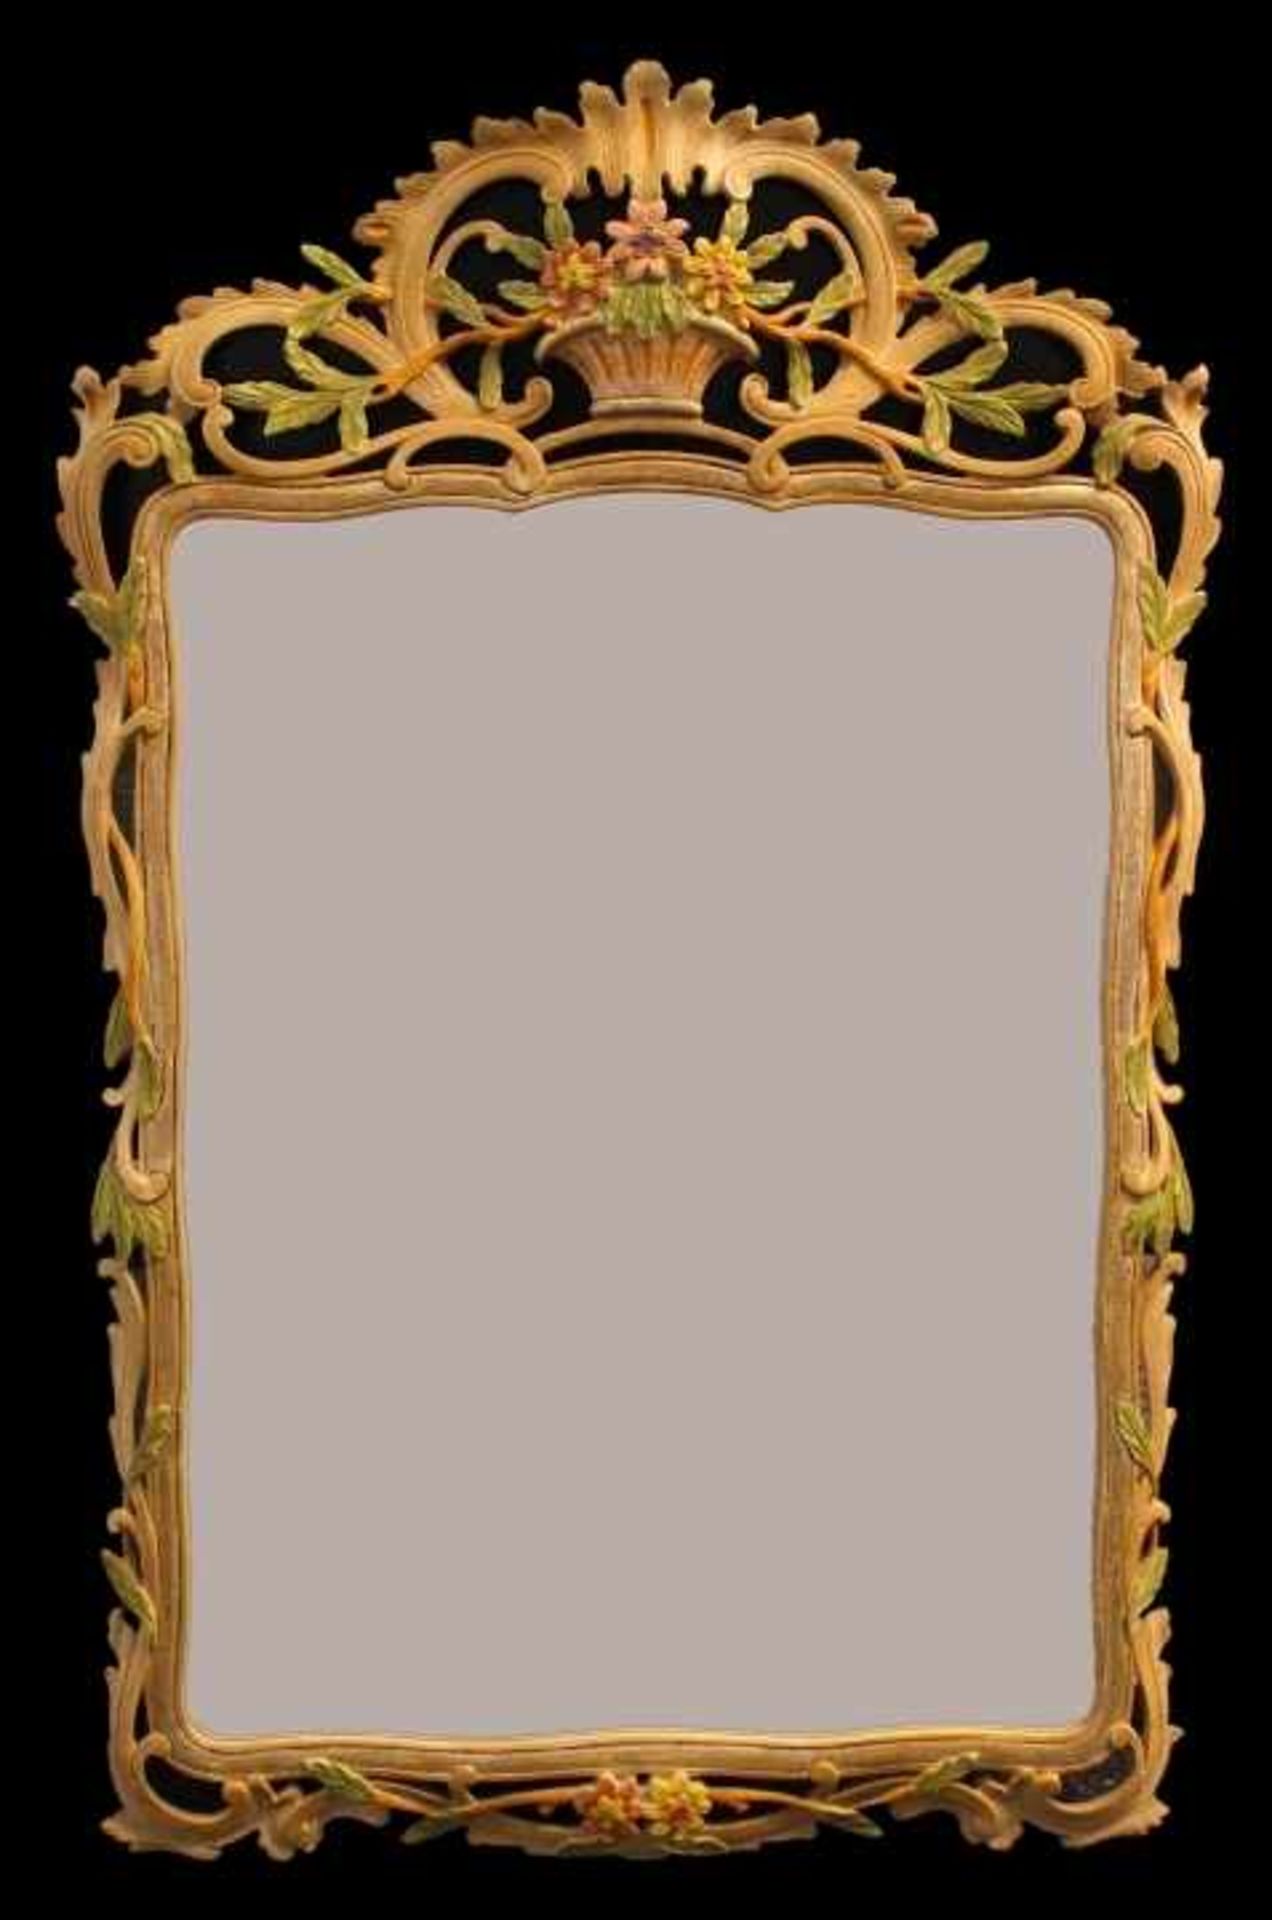 Spiegel im Barockstil 20.Jahrhundert, Holz geschnitzt, teilweise bemalt, verziert mit Blattwerk/